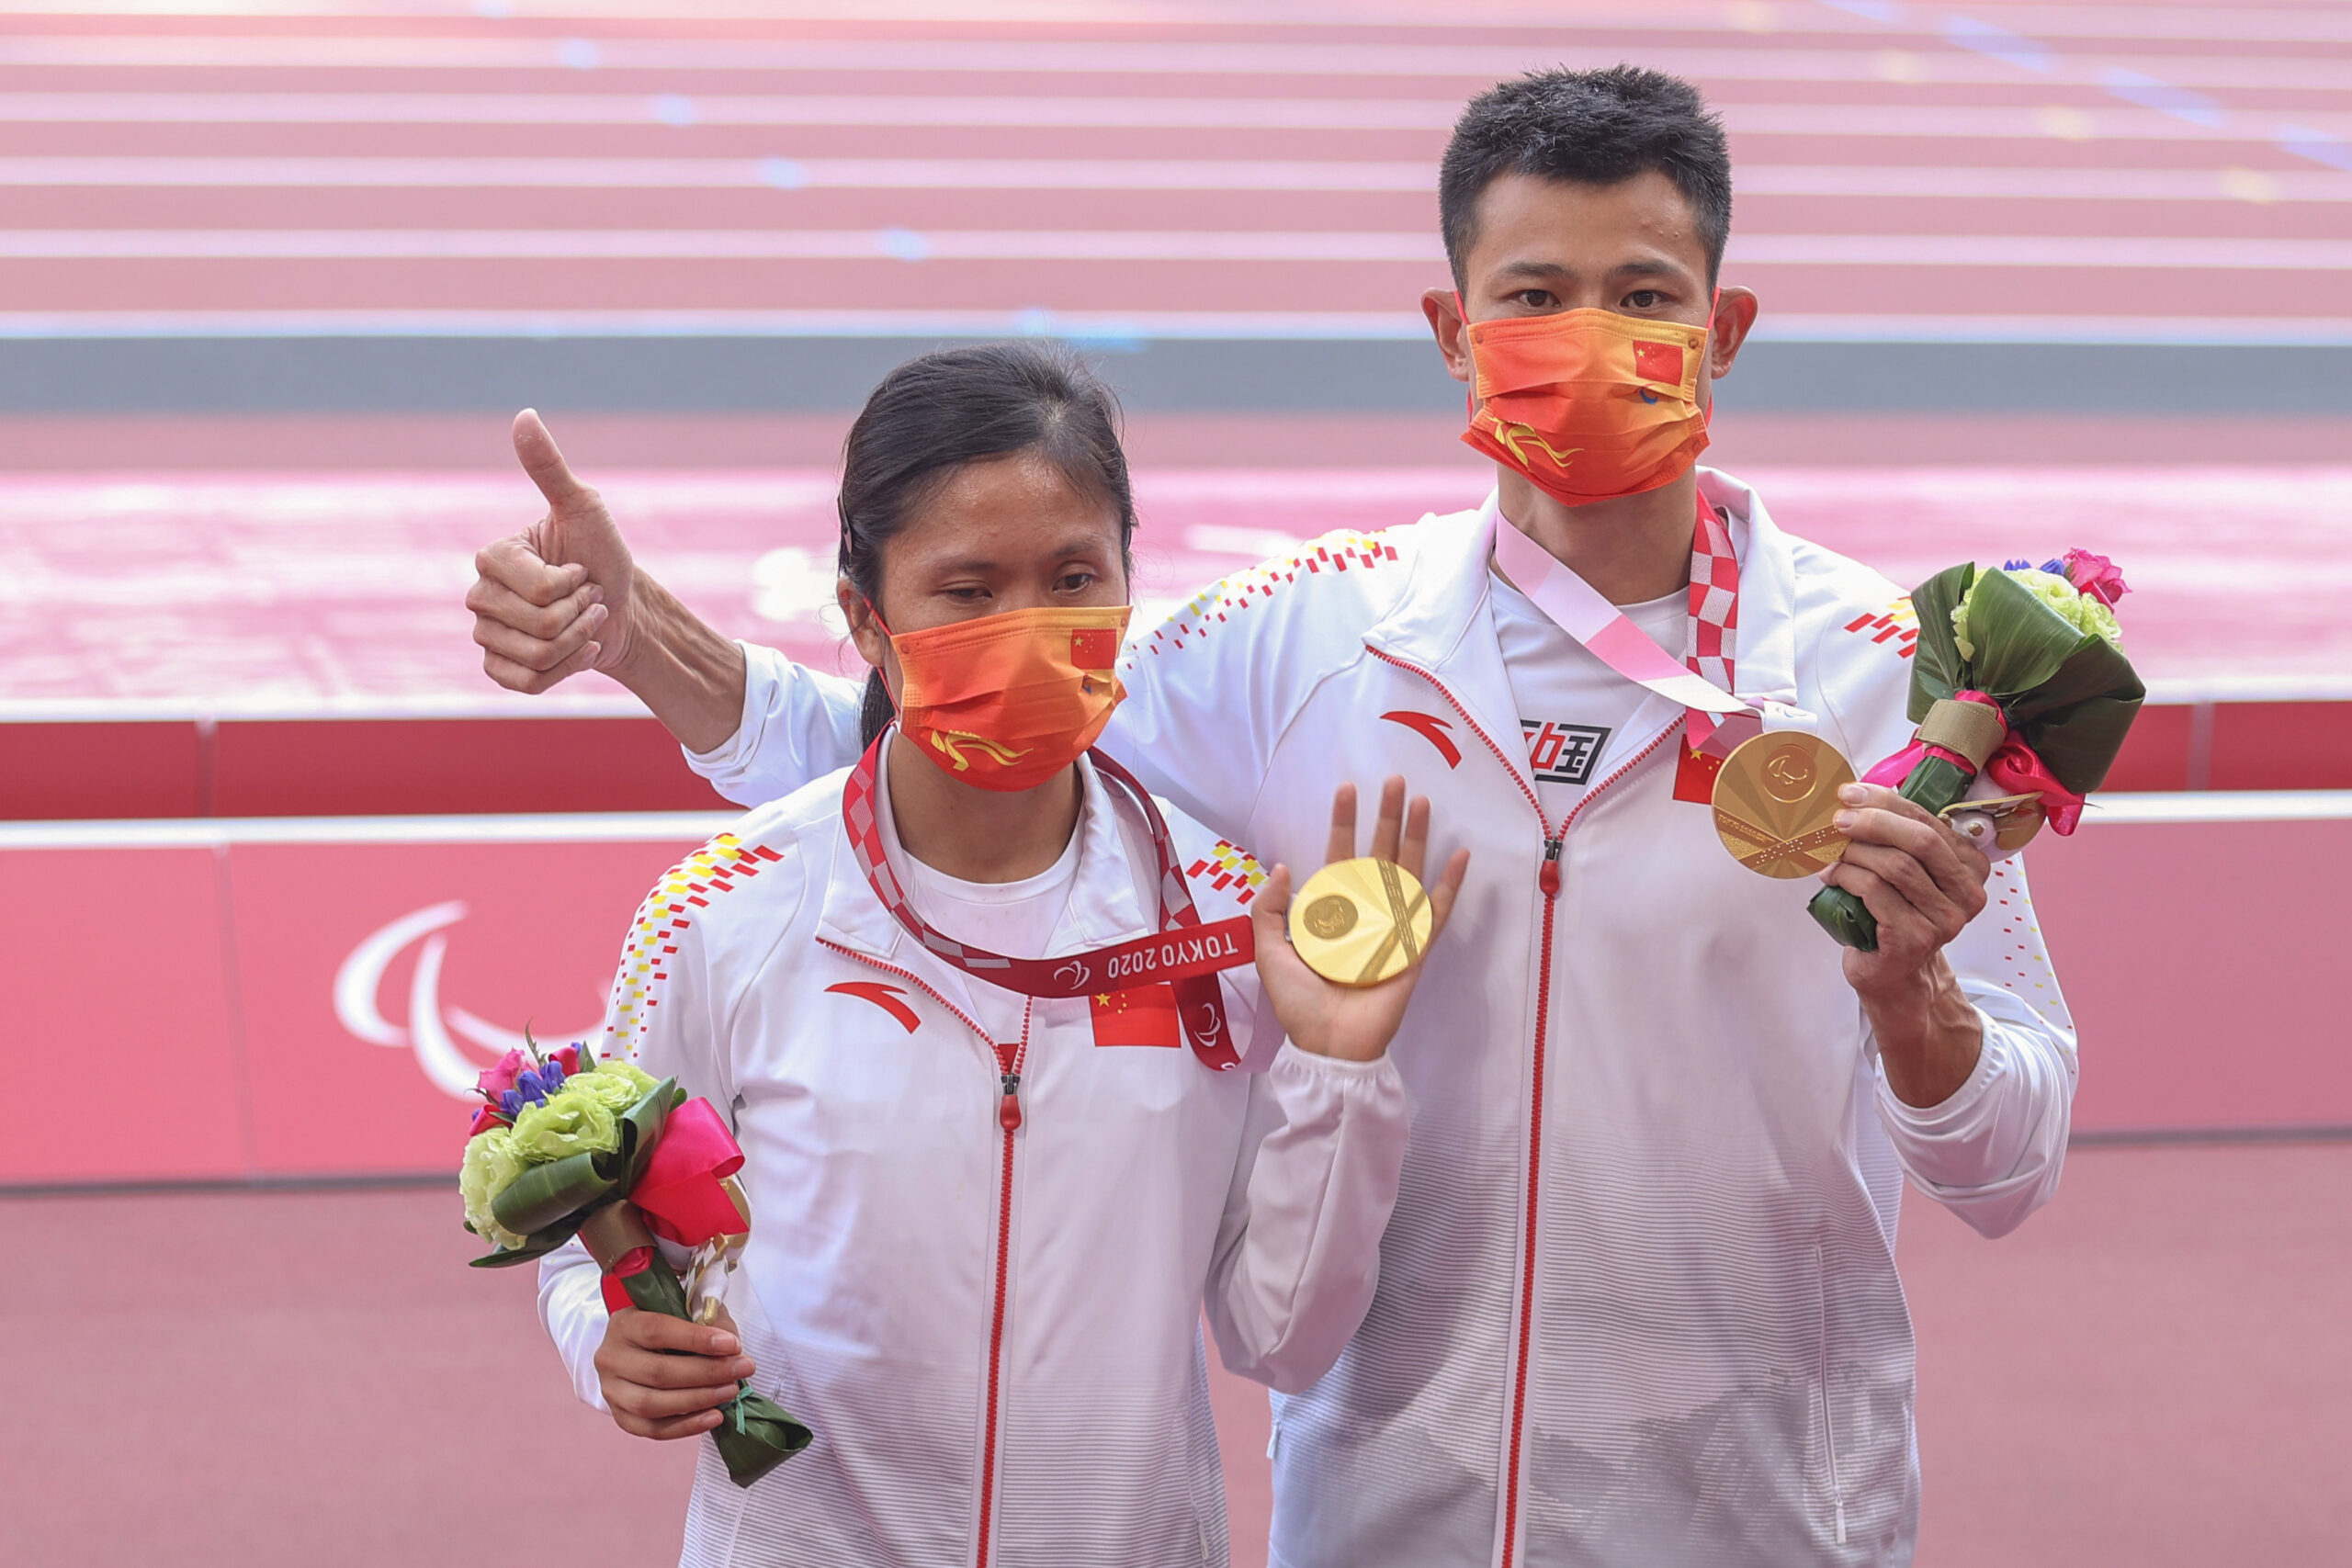 Xudonglin and liucuiqing won gold medal at tokyo 2020 paralympics